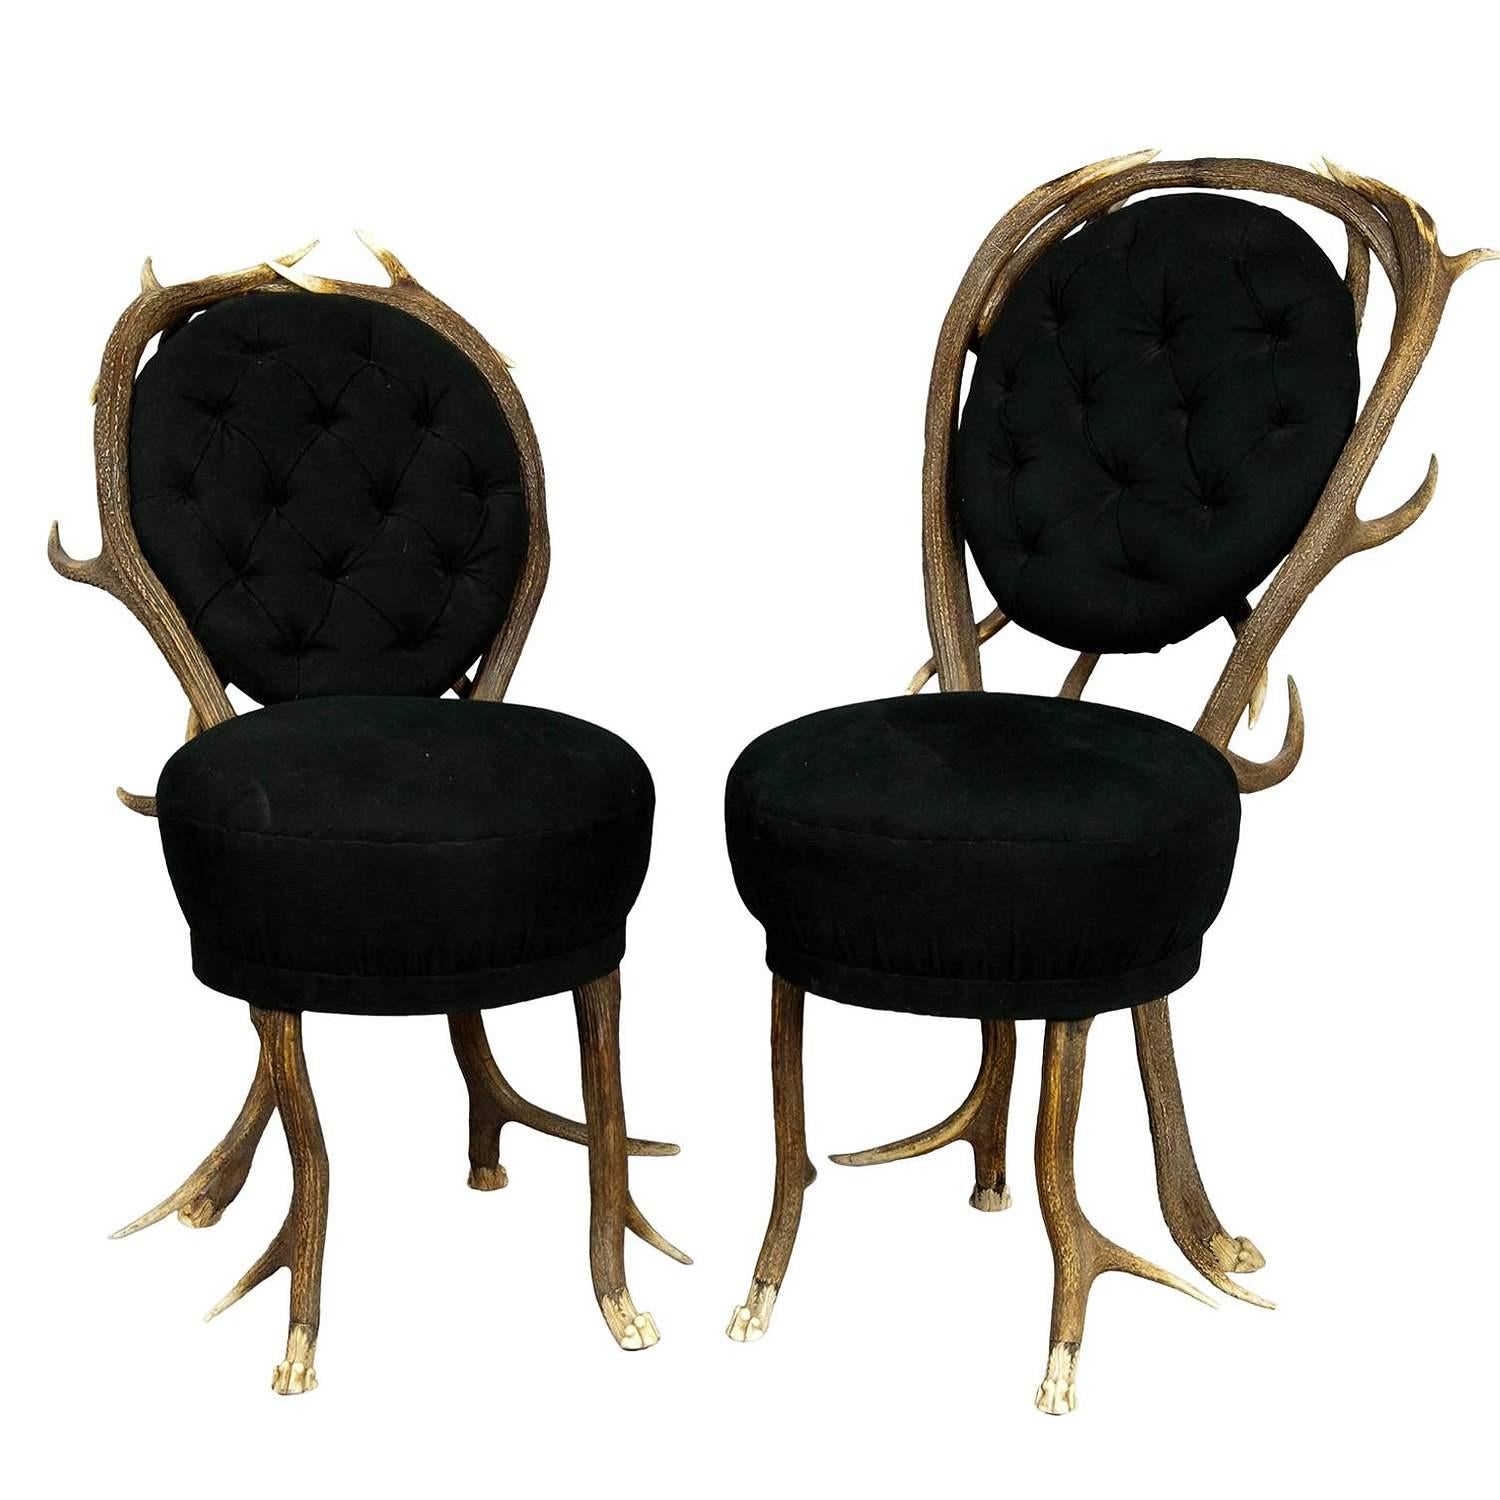 Paar seltene Geweih-Salonstühle, Frankreich ca. 1860

Diese beiden sehr seltenen Geweihstühle sind aus Hirschgeweih gefertigt, die Füße sind als Löwenkrallen geschnitzt. Hergestellt in Frankreich, ca. 1860 - der Bezug ist erneuert.

Geweihmöbel